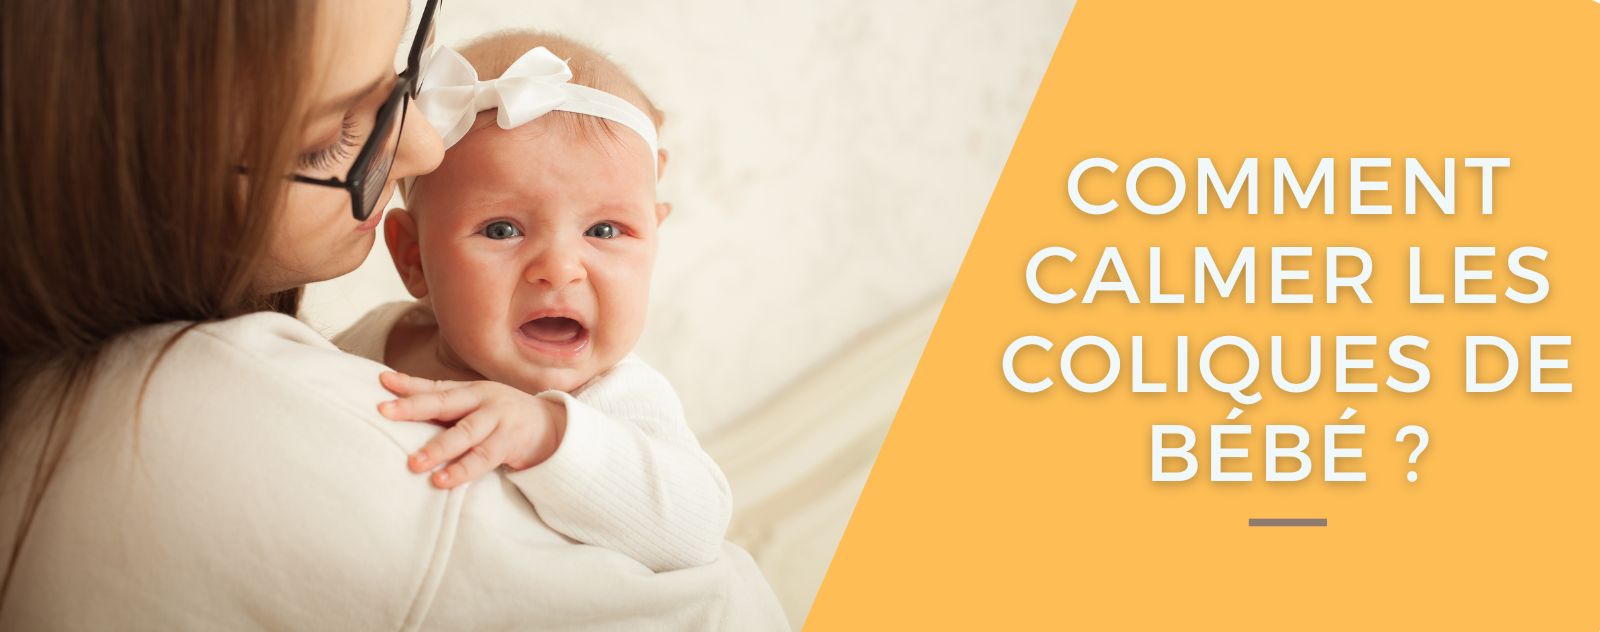 Comment calmer les coliques de bébé ? - Mon Univers Bébé